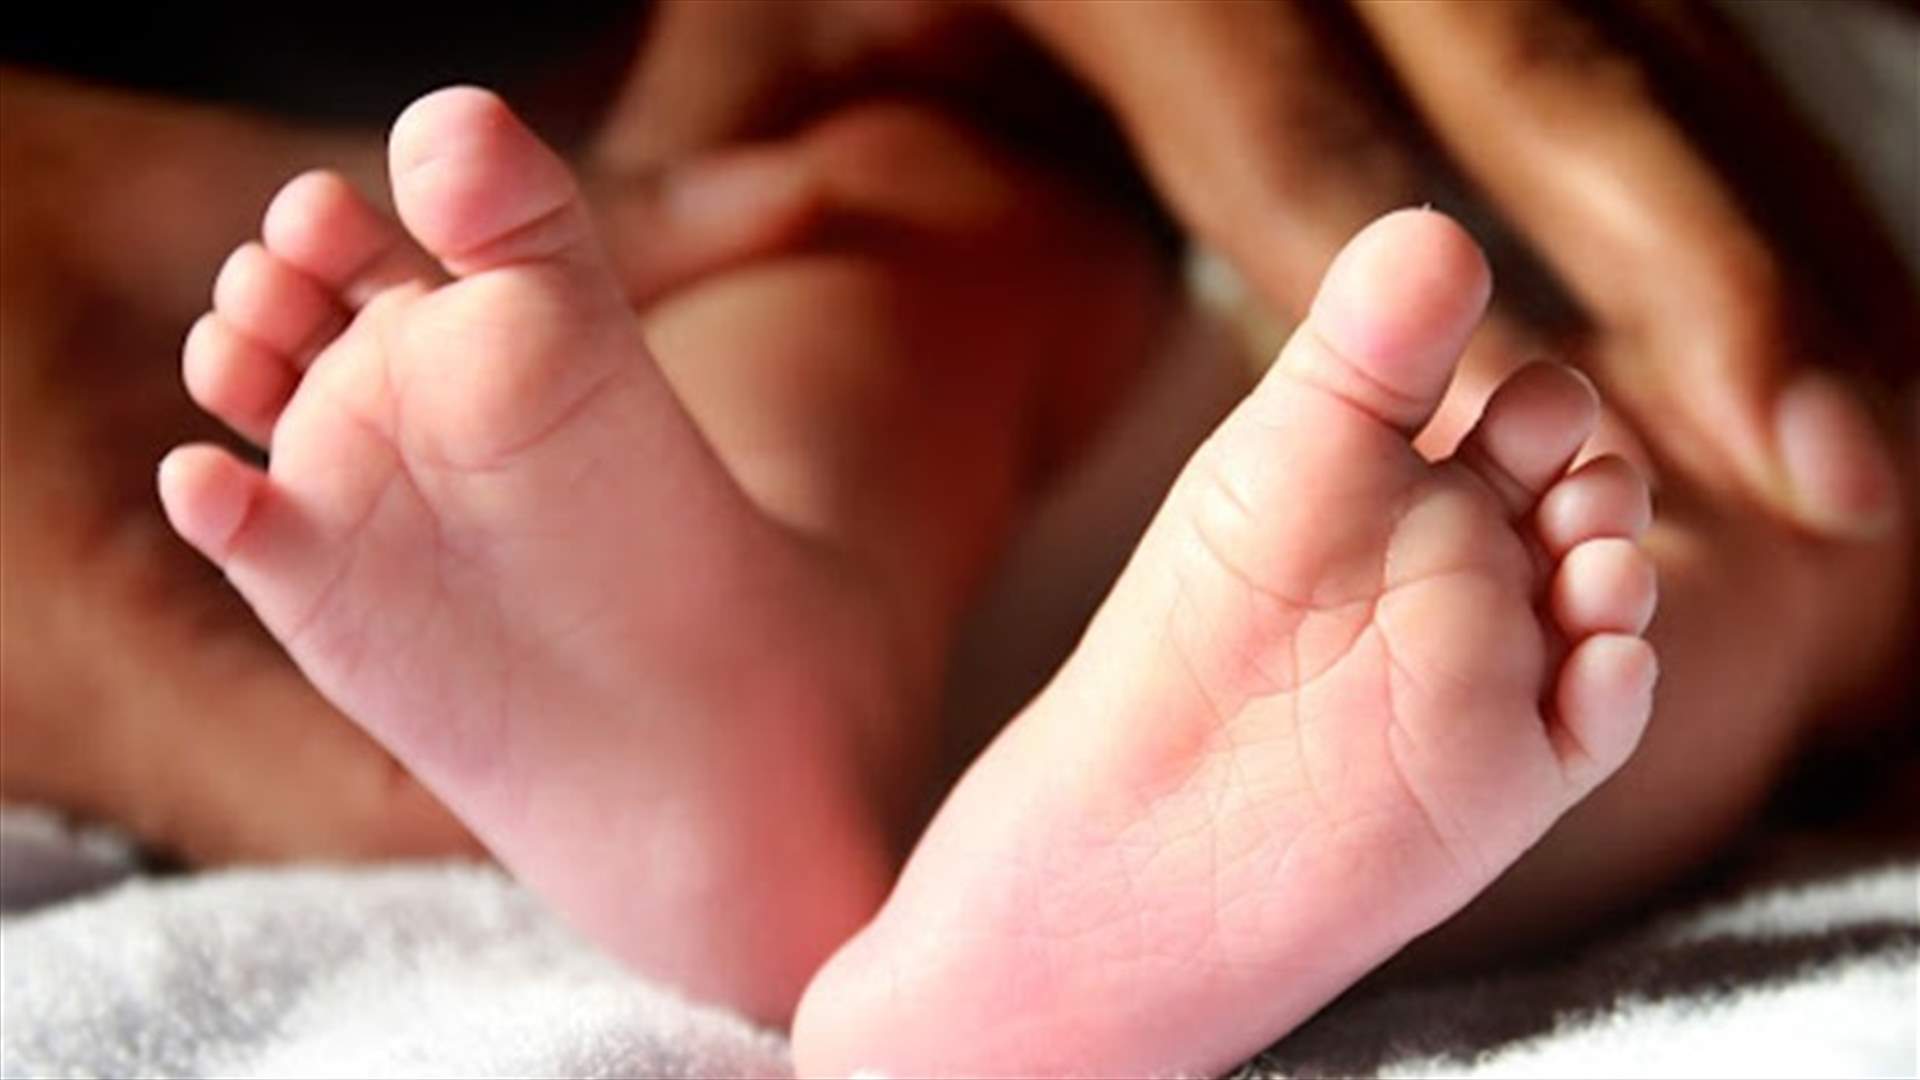 ولادة طفلة بفم ثان في حالة طبية نادرة (صور)